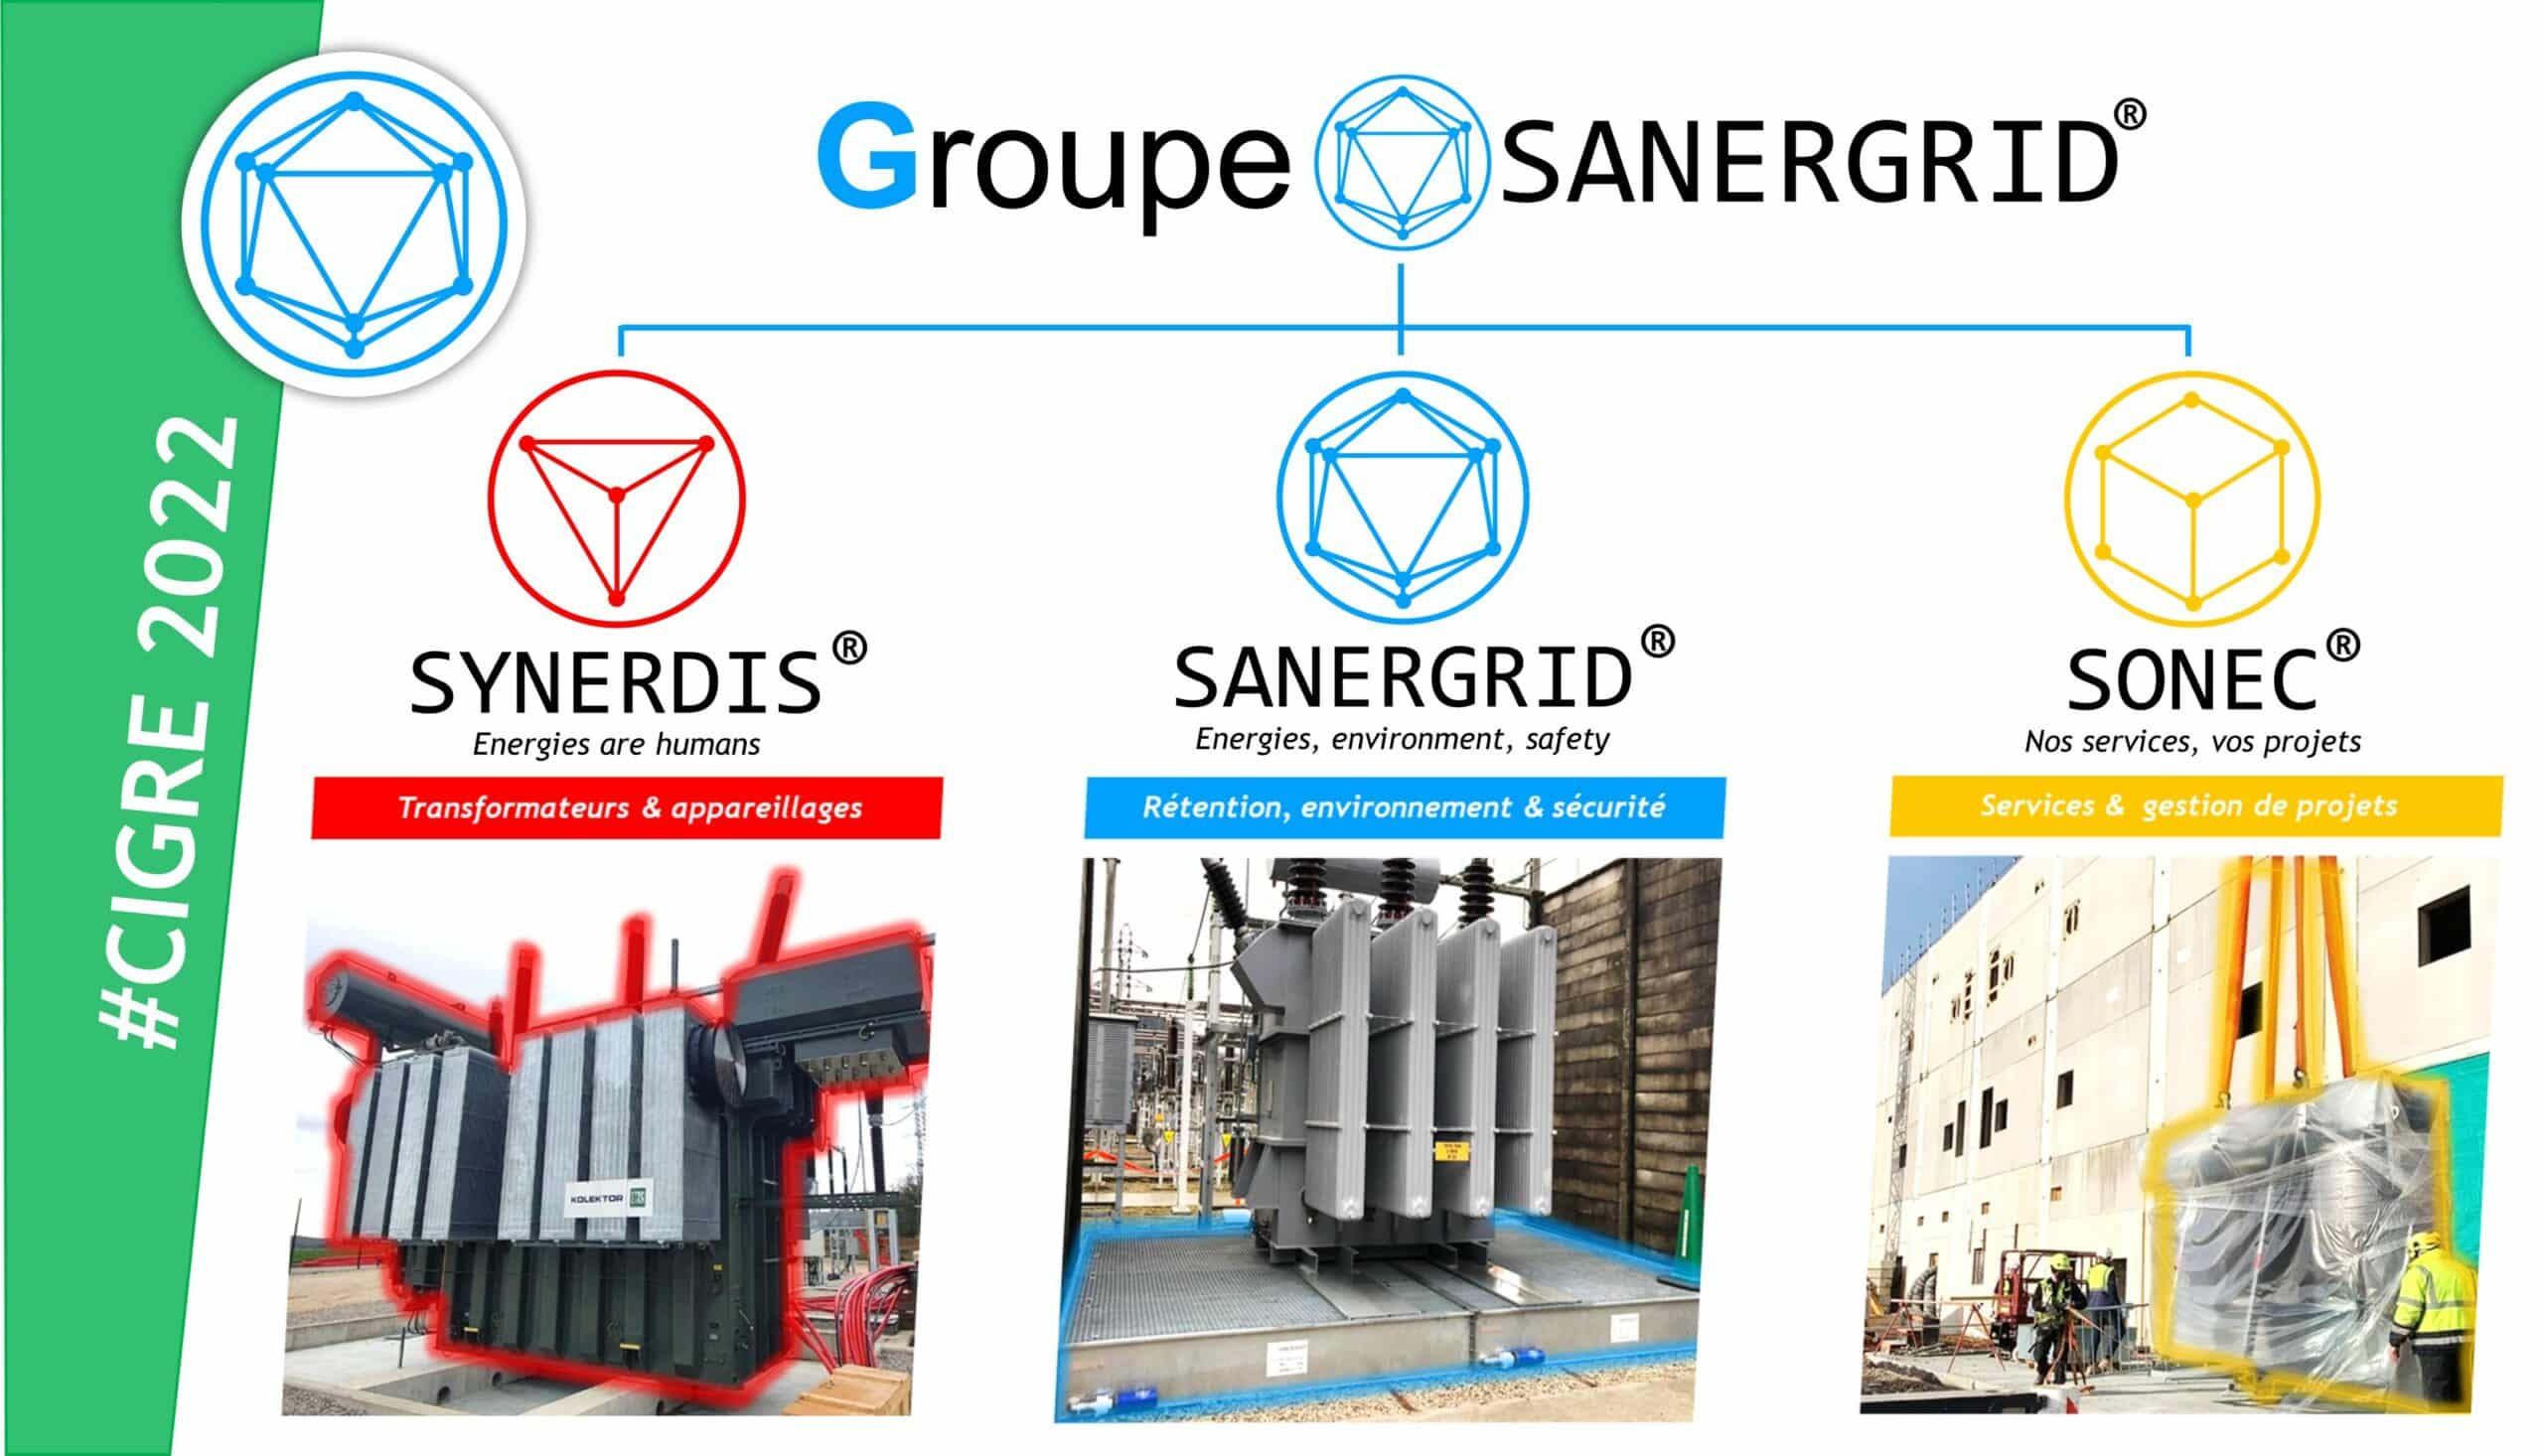 reestructuración jurídica del grupo SANERGRID con los servicios SONEC y SYNERDIS y la distribución de material eléctrico